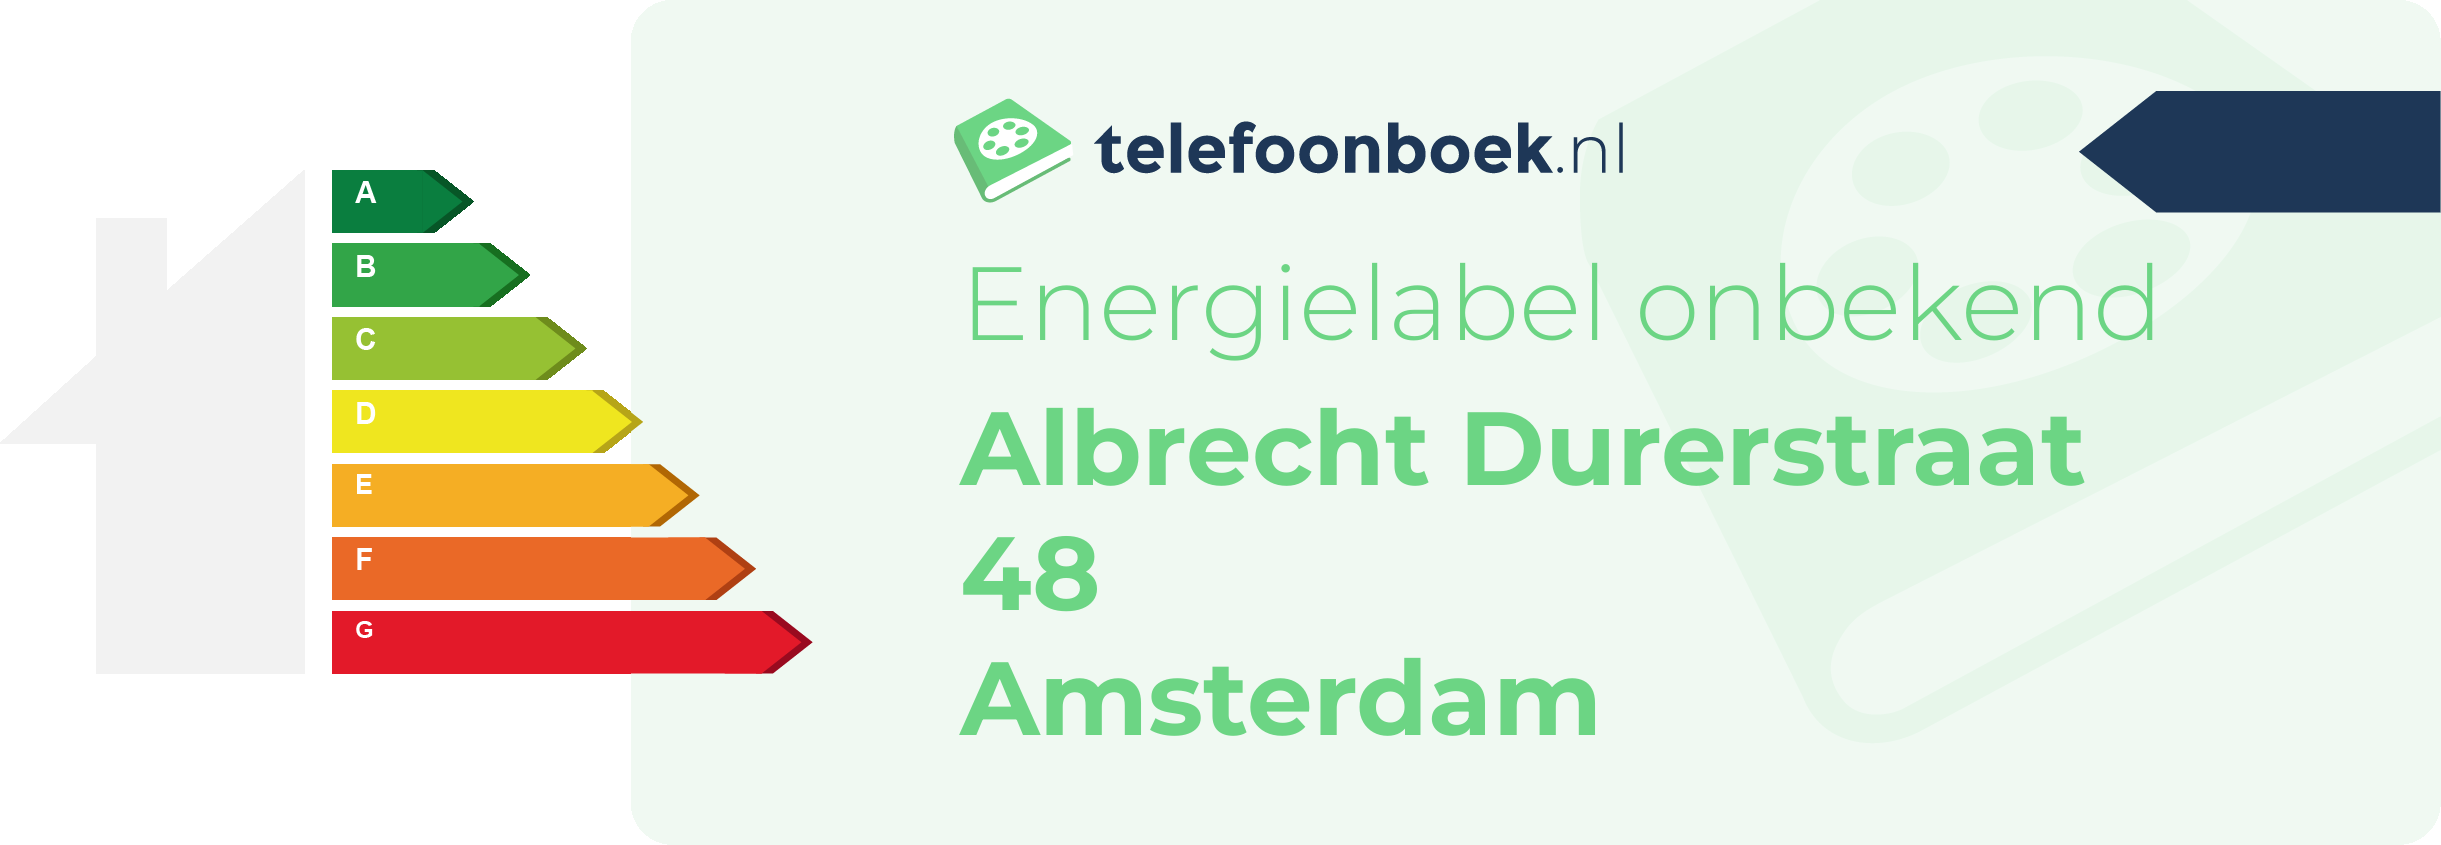 Energielabel Albrecht Durerstraat 48 Amsterdam